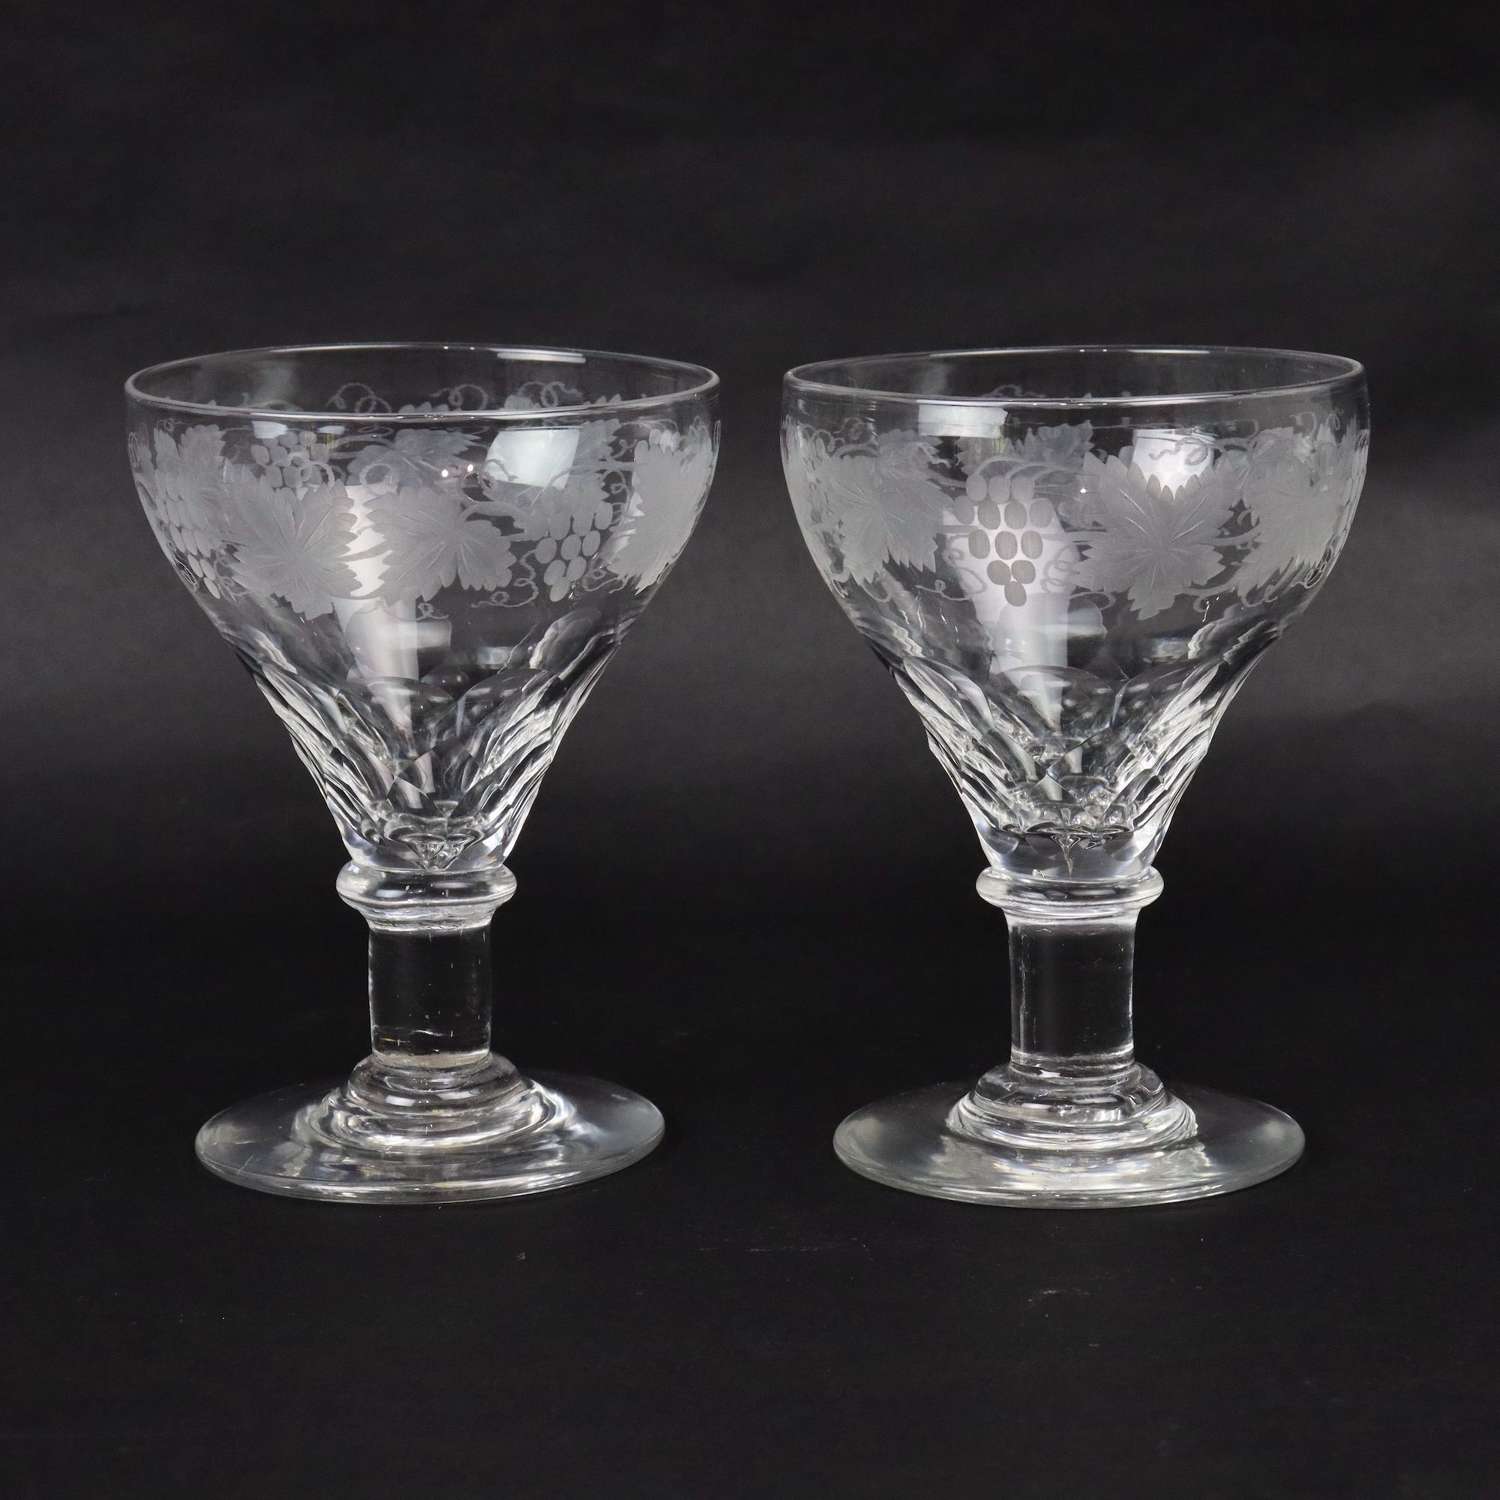 Pair of engraved, crystal rummers